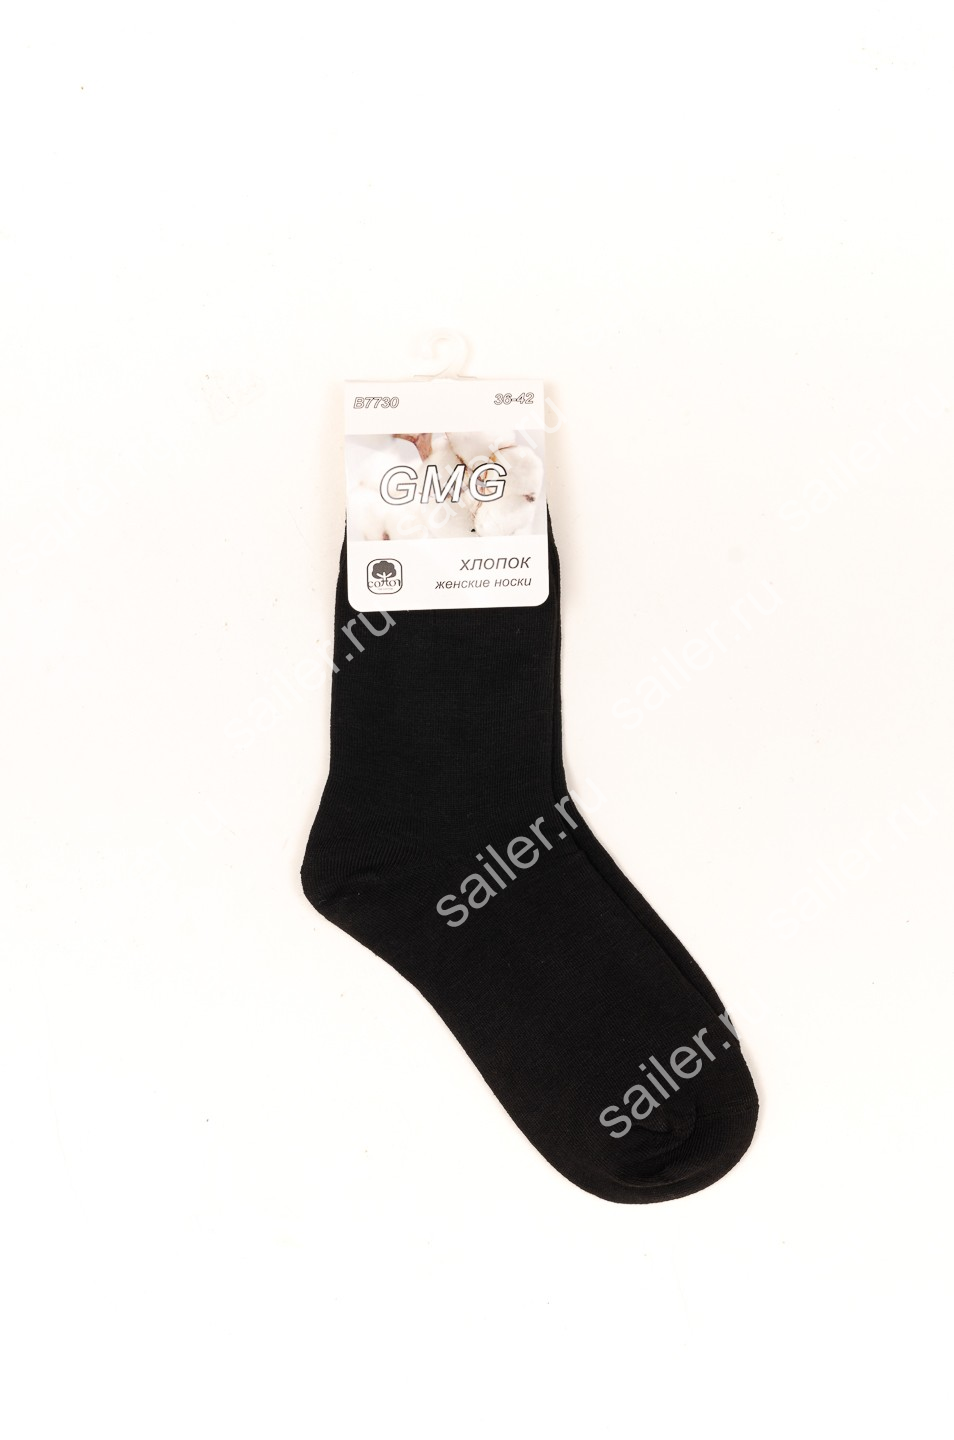 Женские носки GMG B7730 длинные - Sailer